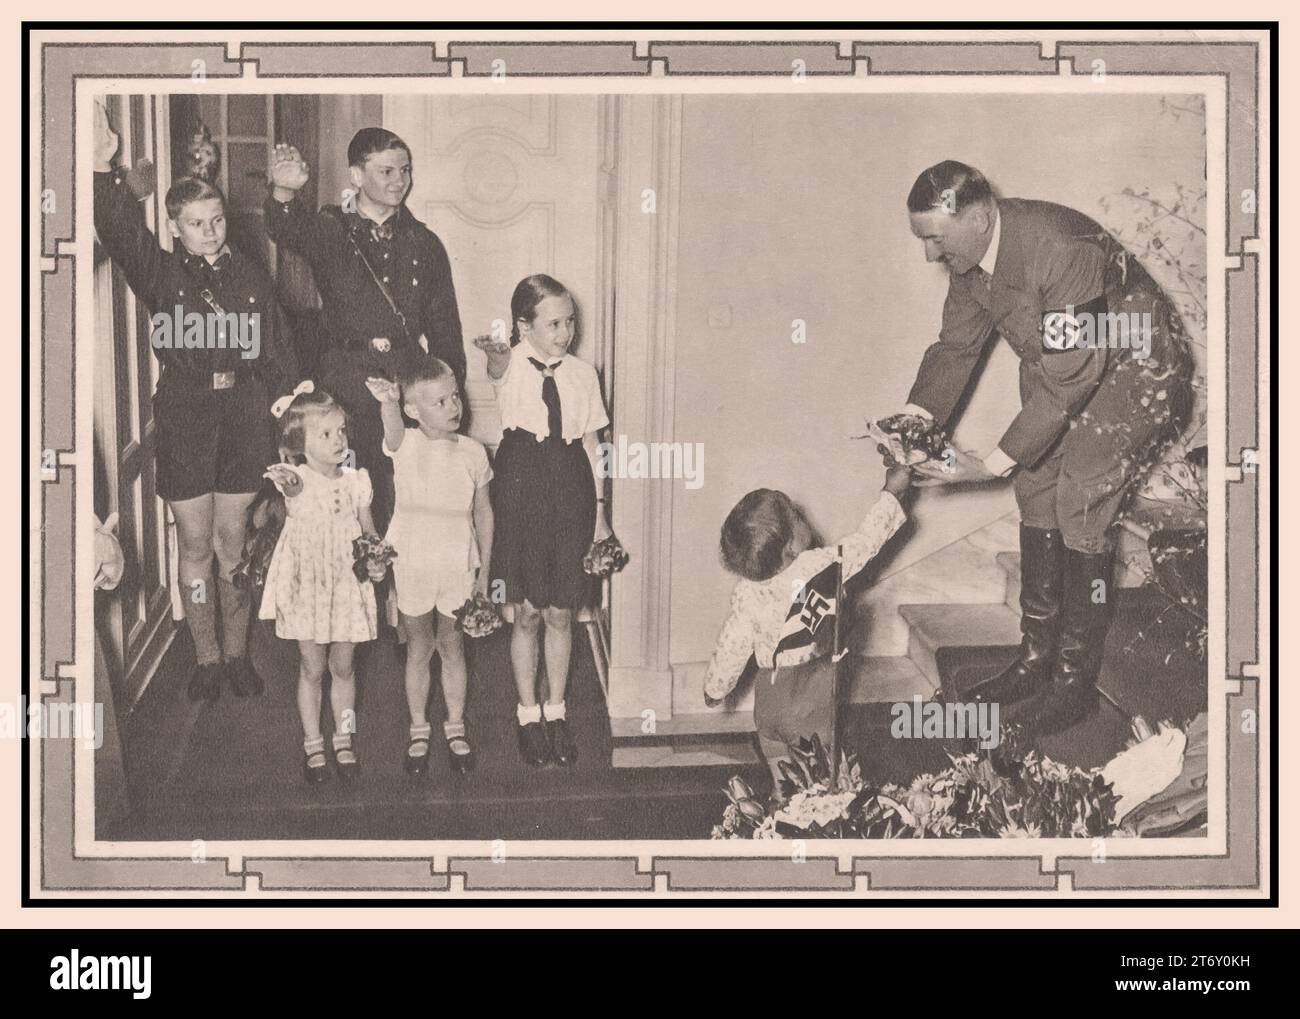 Adolf Hitler avec des enfants 1939 Fuhrer de l'Allemagne nazie recevant des fleurs d'un nourrisson, tandis que de jeunes enfants avec BDM Girl et Hitler Youth en uniforme ( Hitler Jugend Hitler Youth) regardent donner le salut Heil Hitler. Banque D'Images